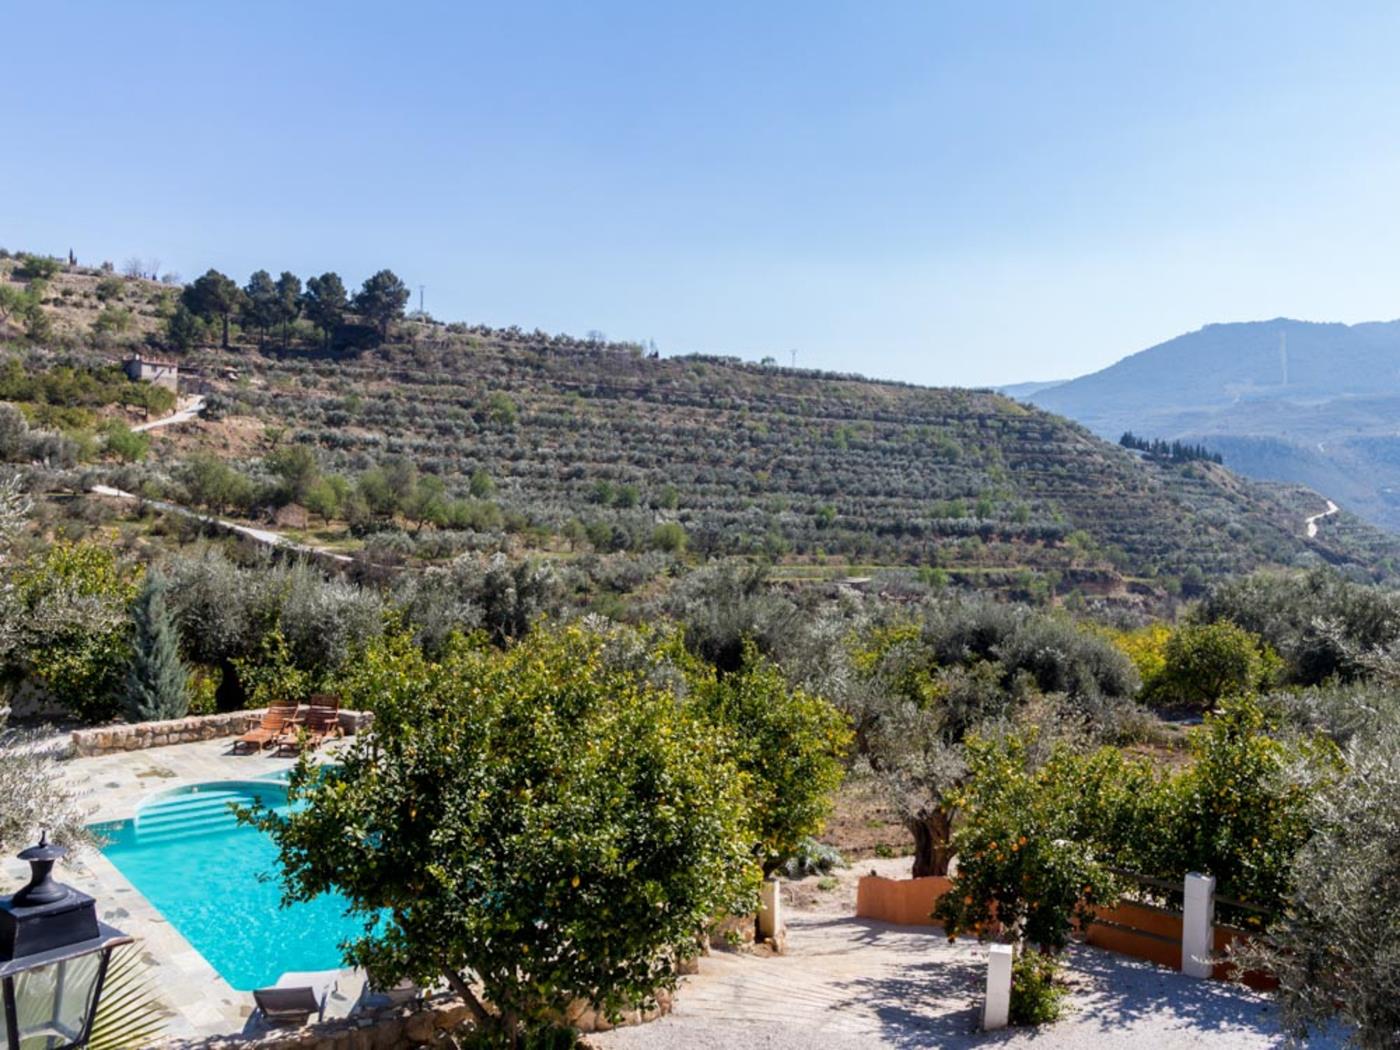 Encantadora casa con piscina, jardín y vistas en Melegís